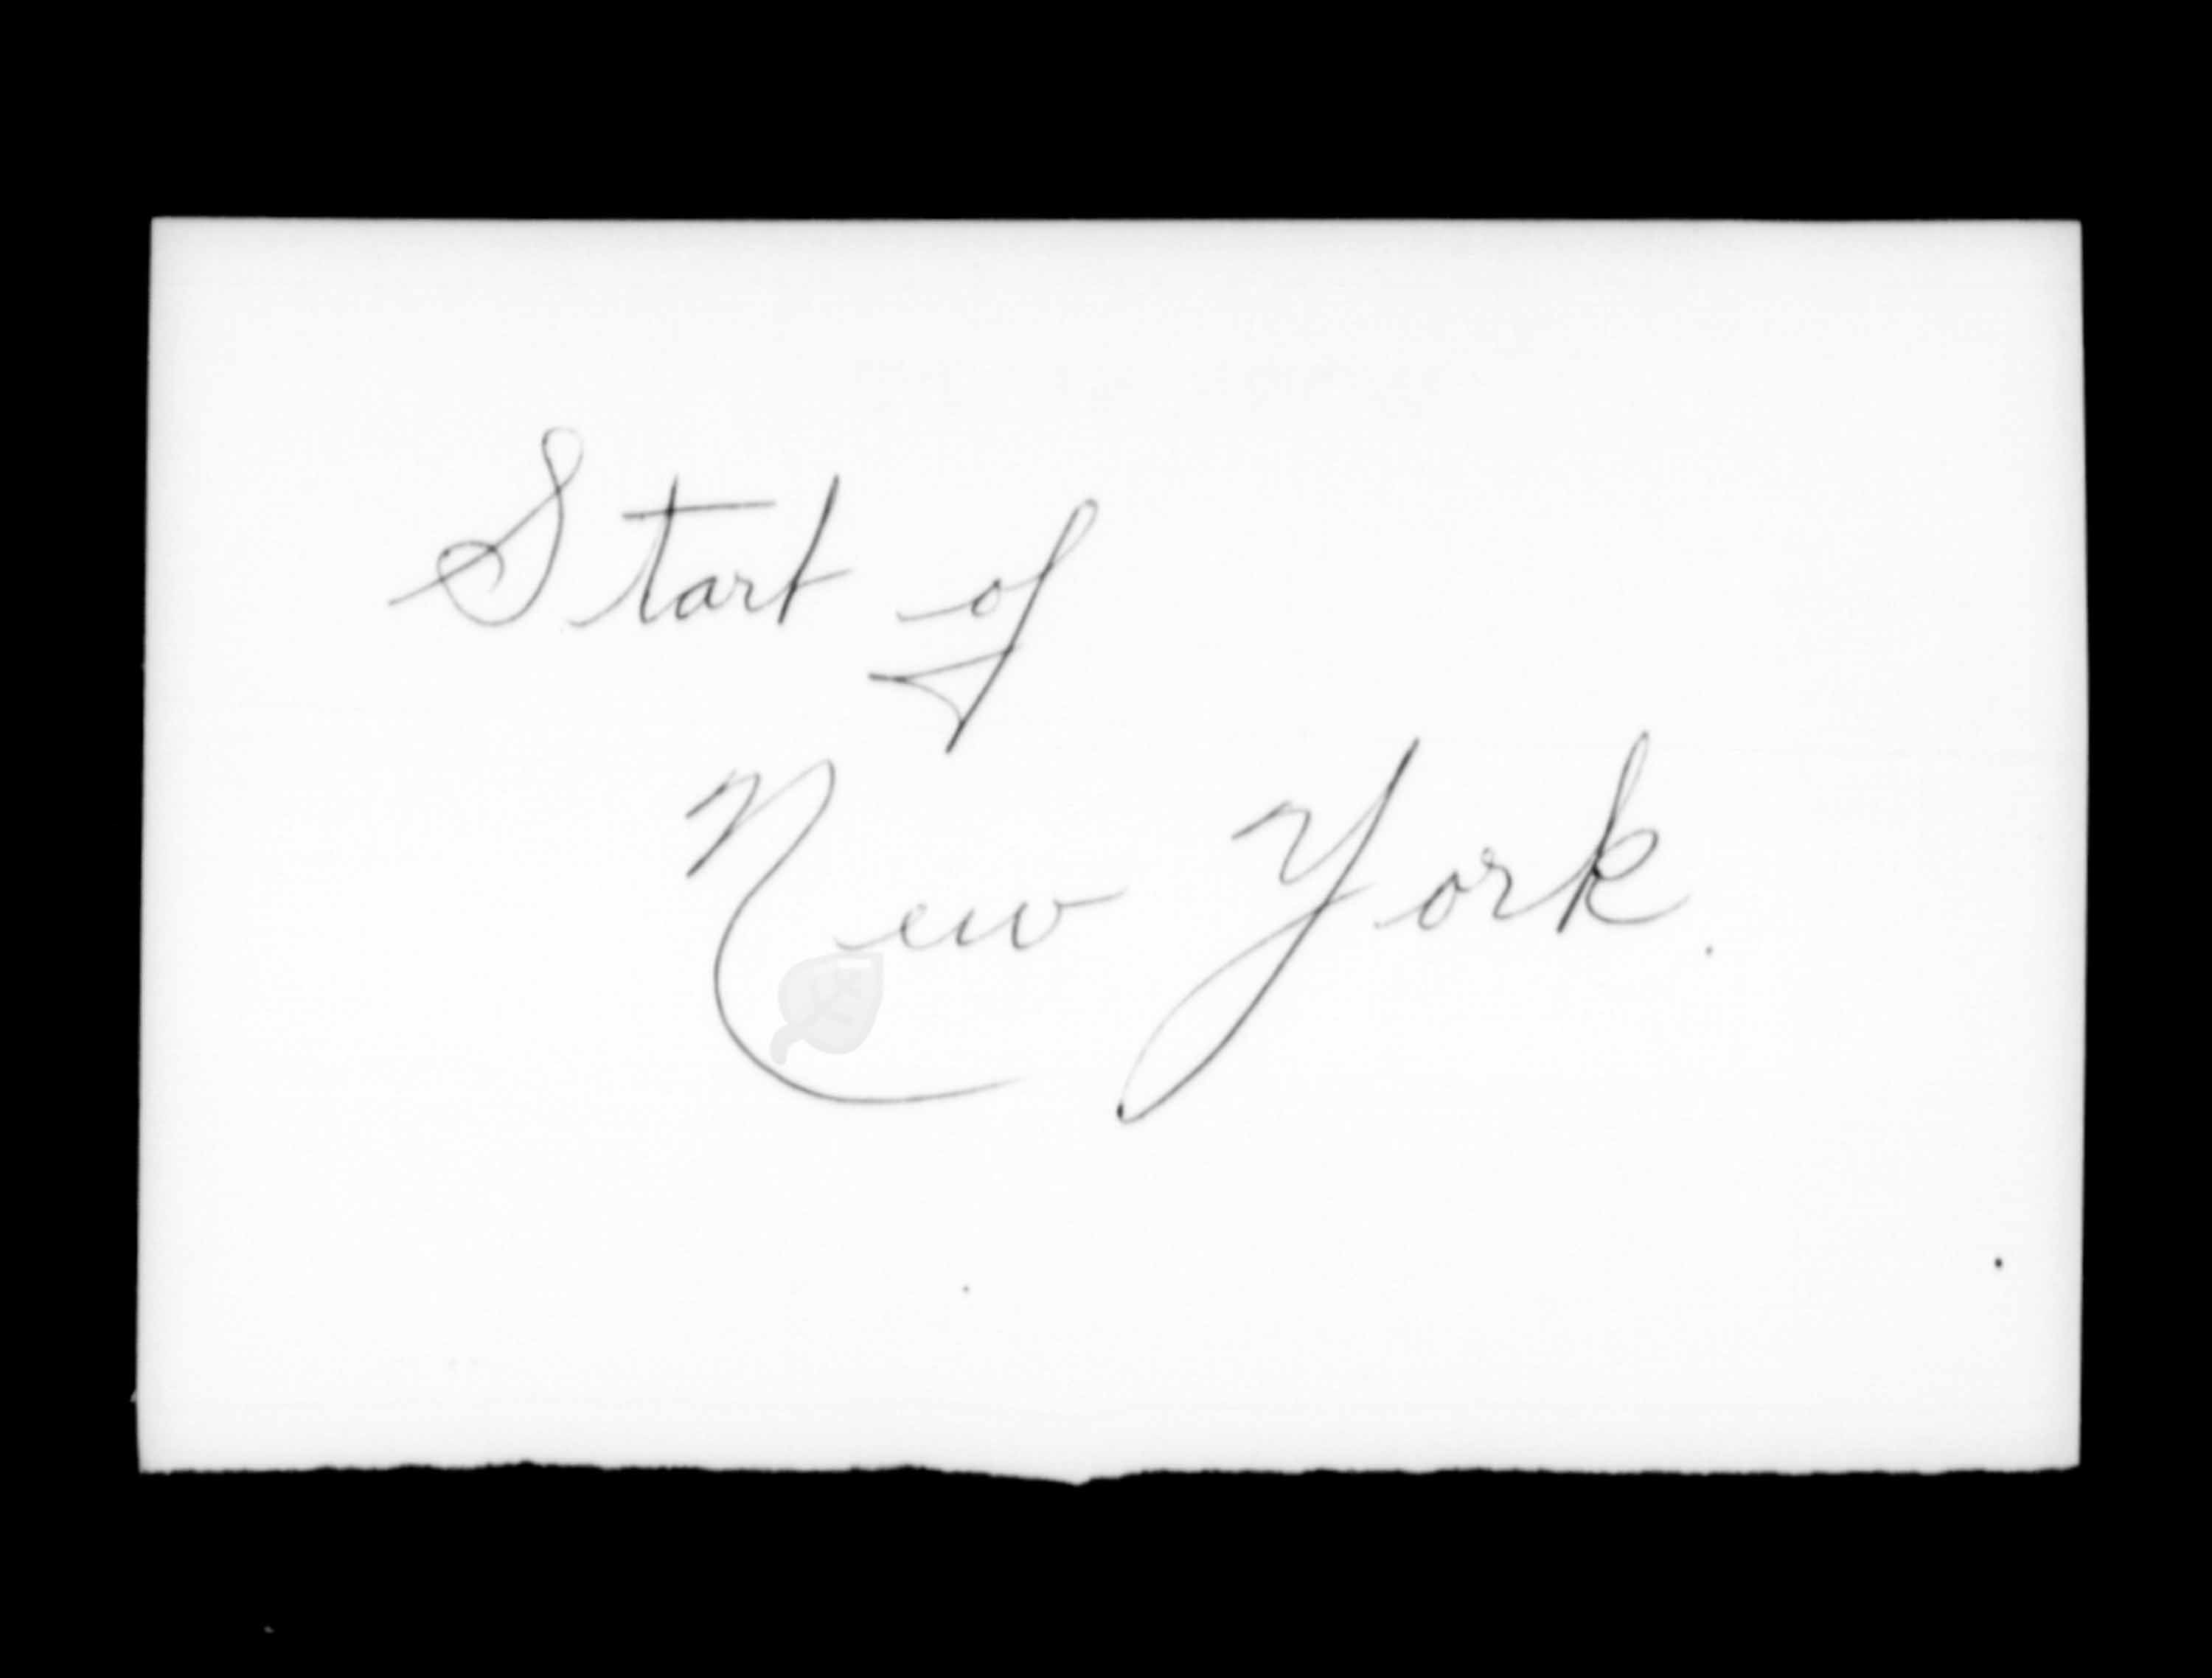 Titre : Listes de passagers : New York (1925-1935) - N d'enregistrement Mikan : 179091 - Microforme : t-14923